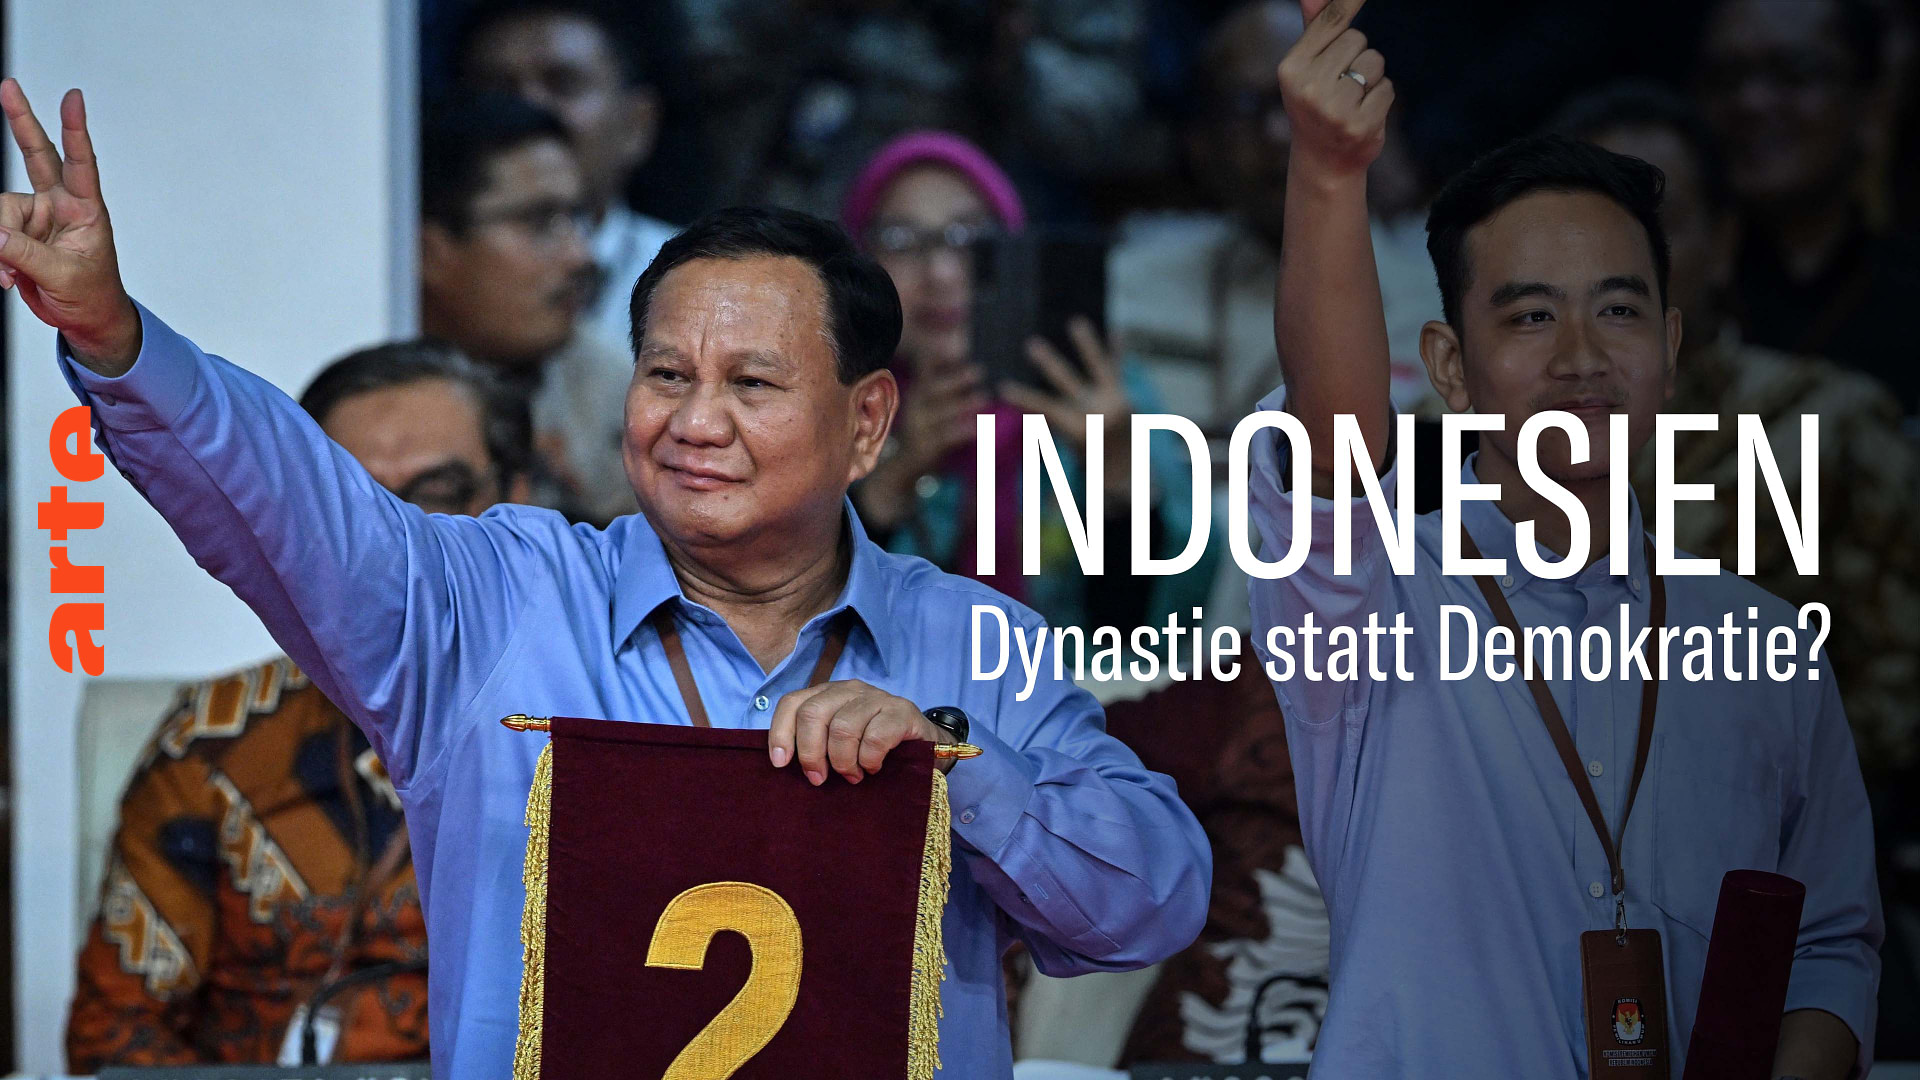 Indonesien: Familiendynastie statt Demokratie?